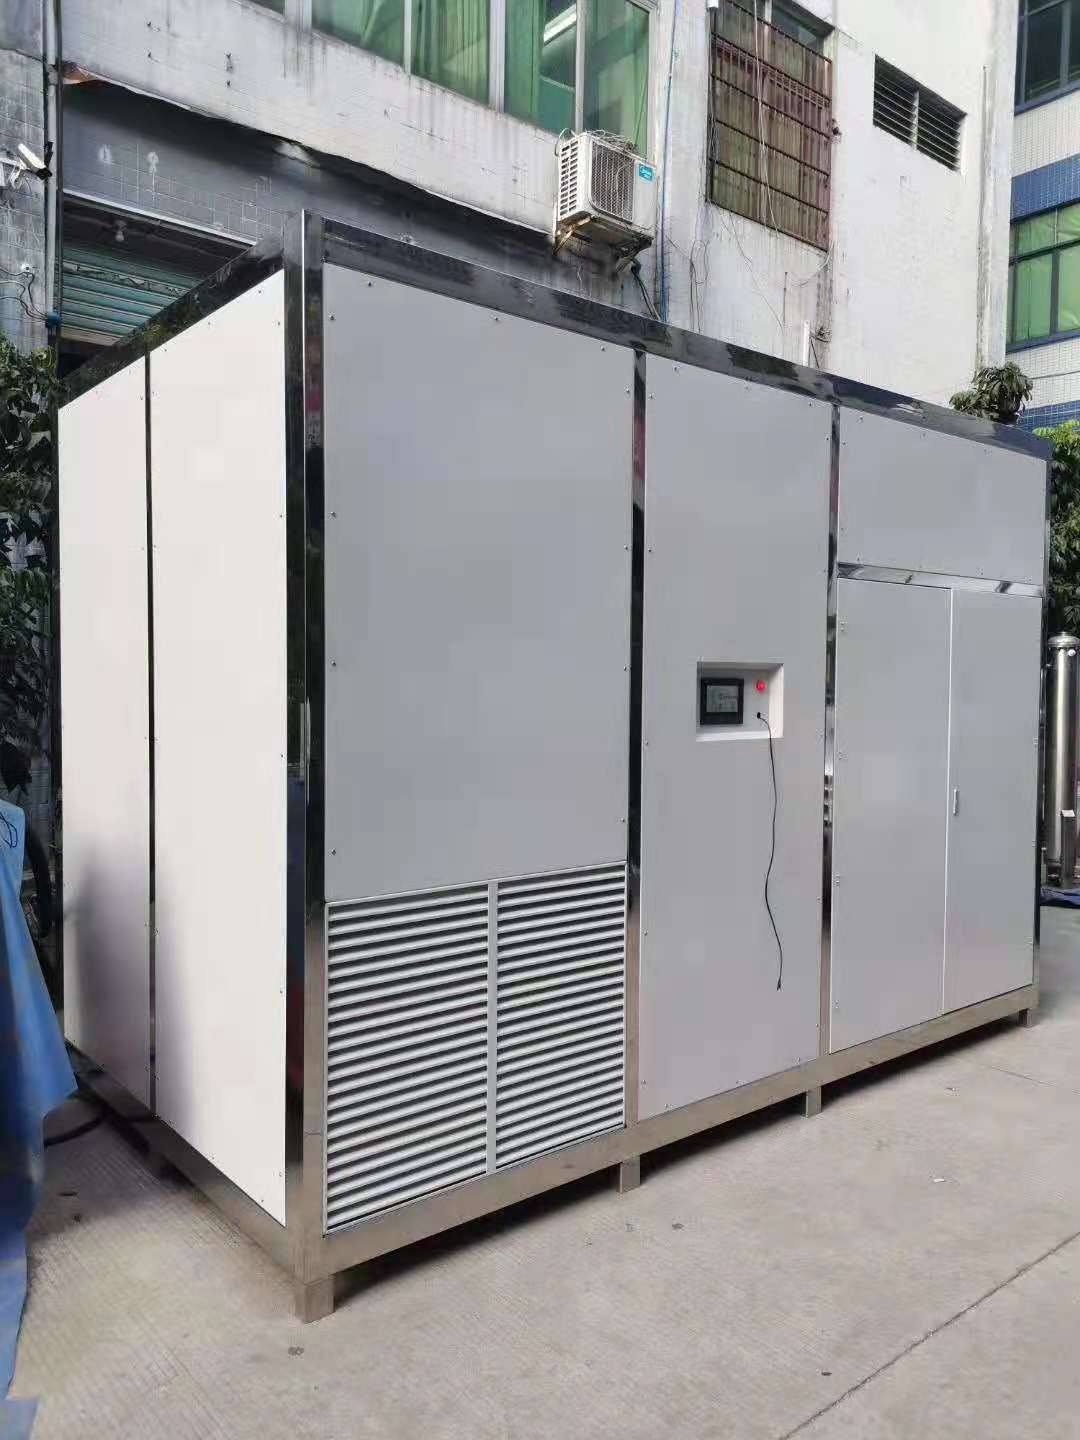 YT-025-1000A臭氧发生器 公斤级臭氧发生器 广州佳环氧气源1000克臭氧发生器多少钱